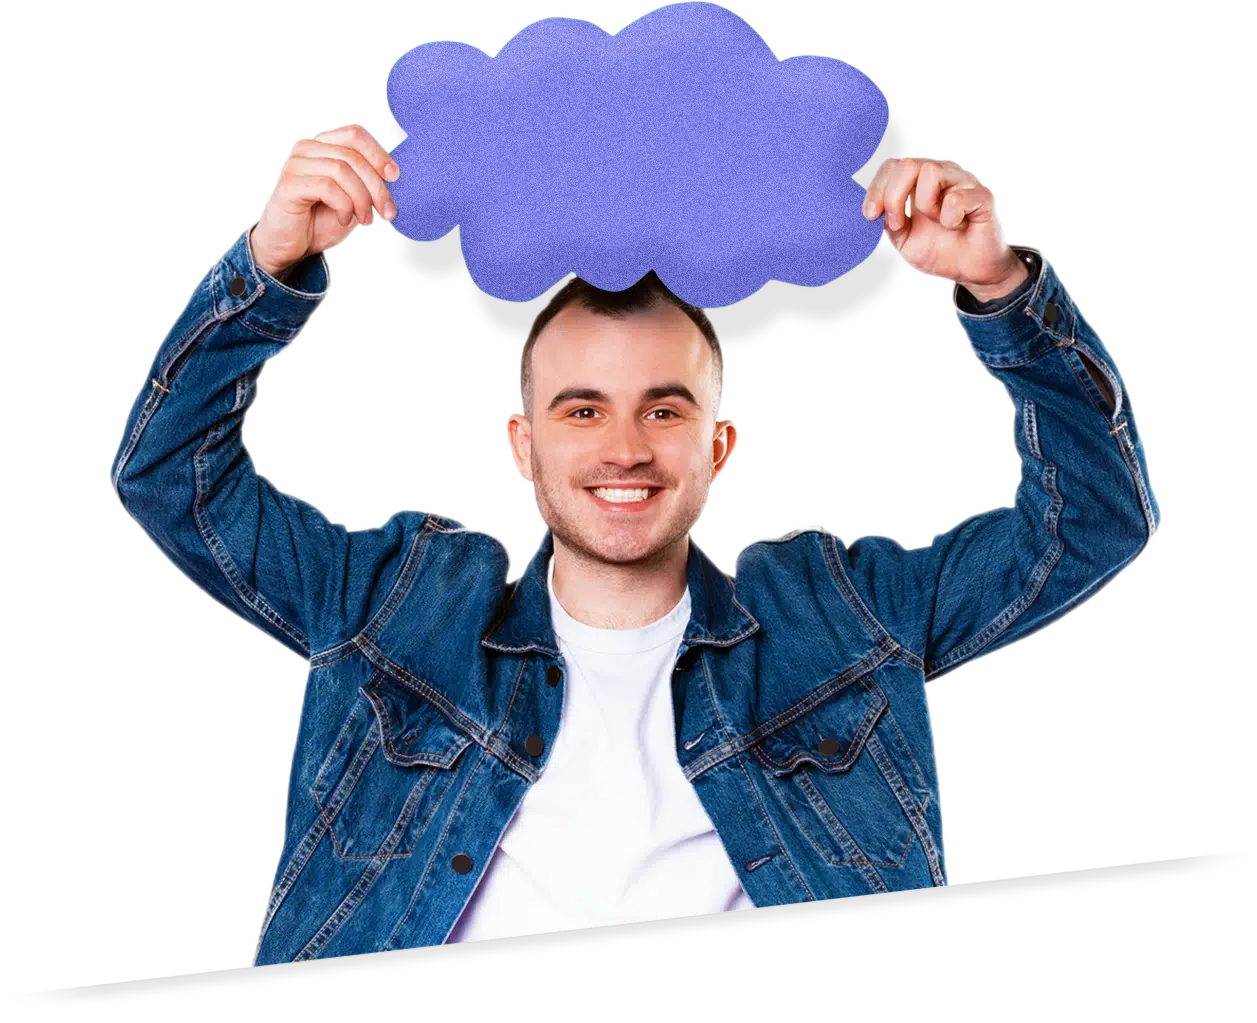 Persona joven emocionada sosteniendo una nube azul sobre su cabeza, ilustrando el servicio de hosting cloud.